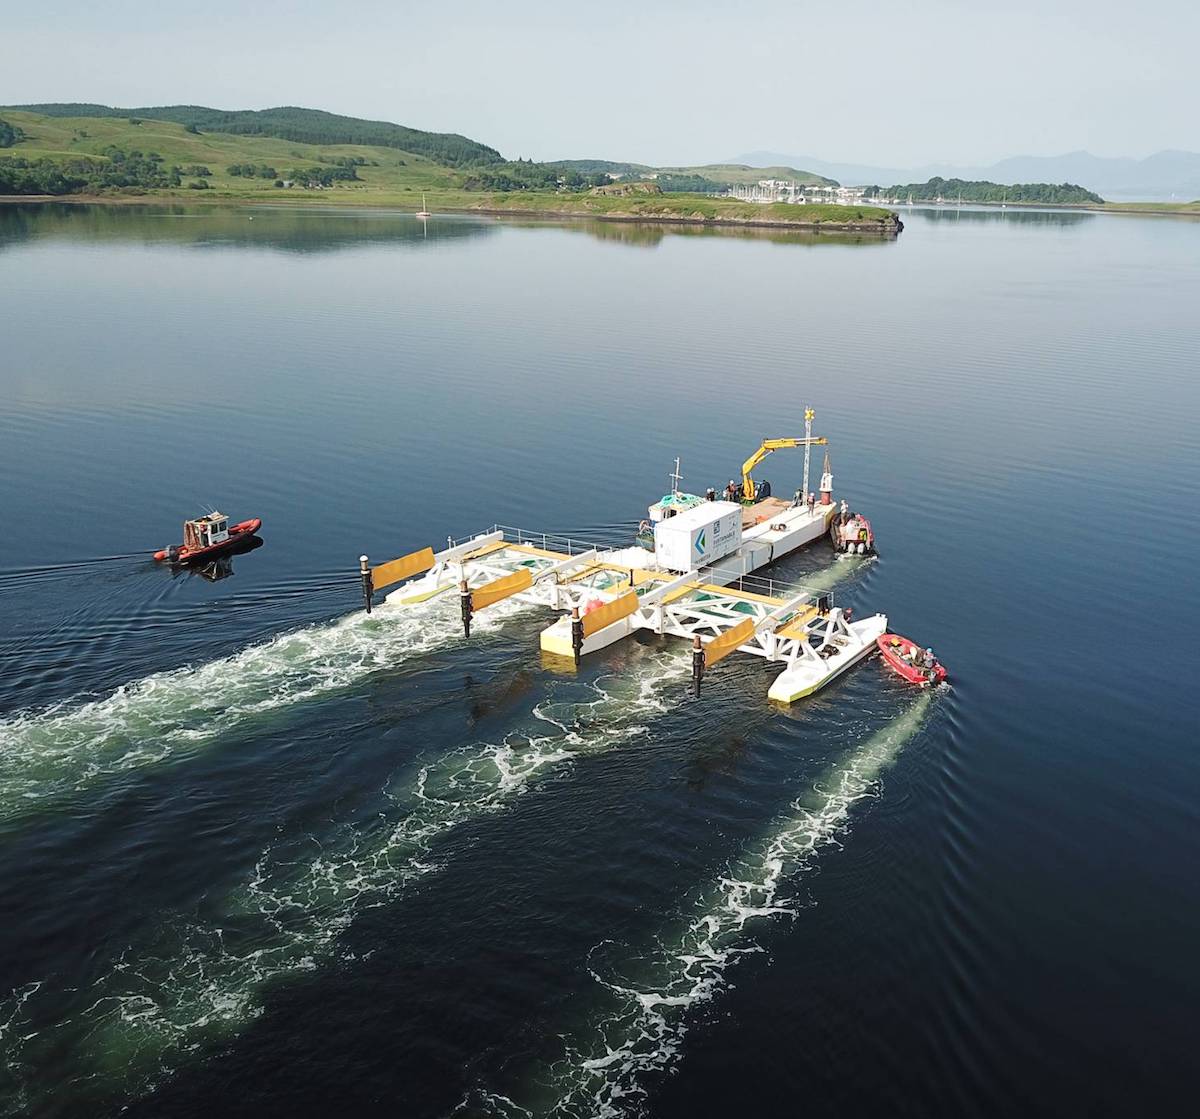 Rotores ultrarresistentes para captar la energía de las mareas "flotando"